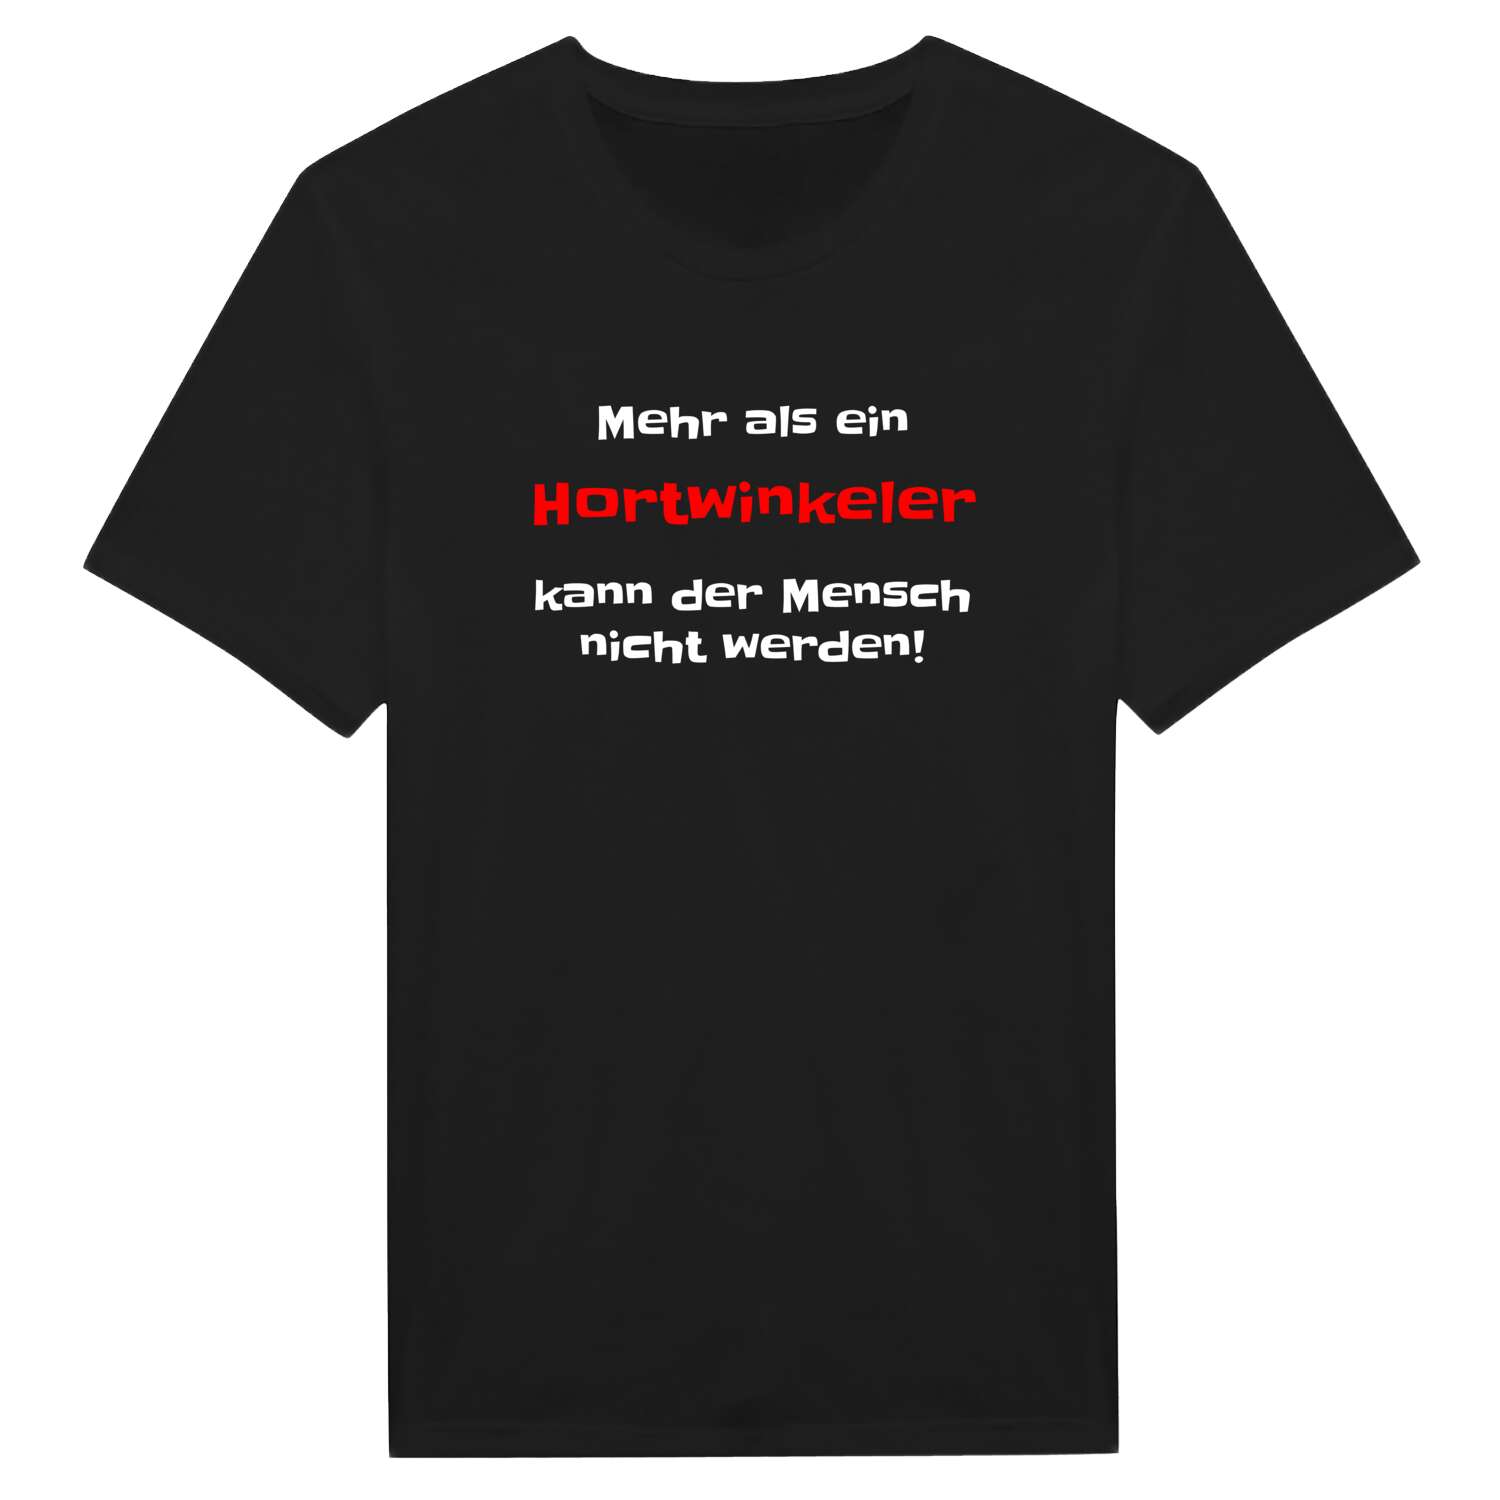 Hortwinkel T-Shirt »Mehr als ein«